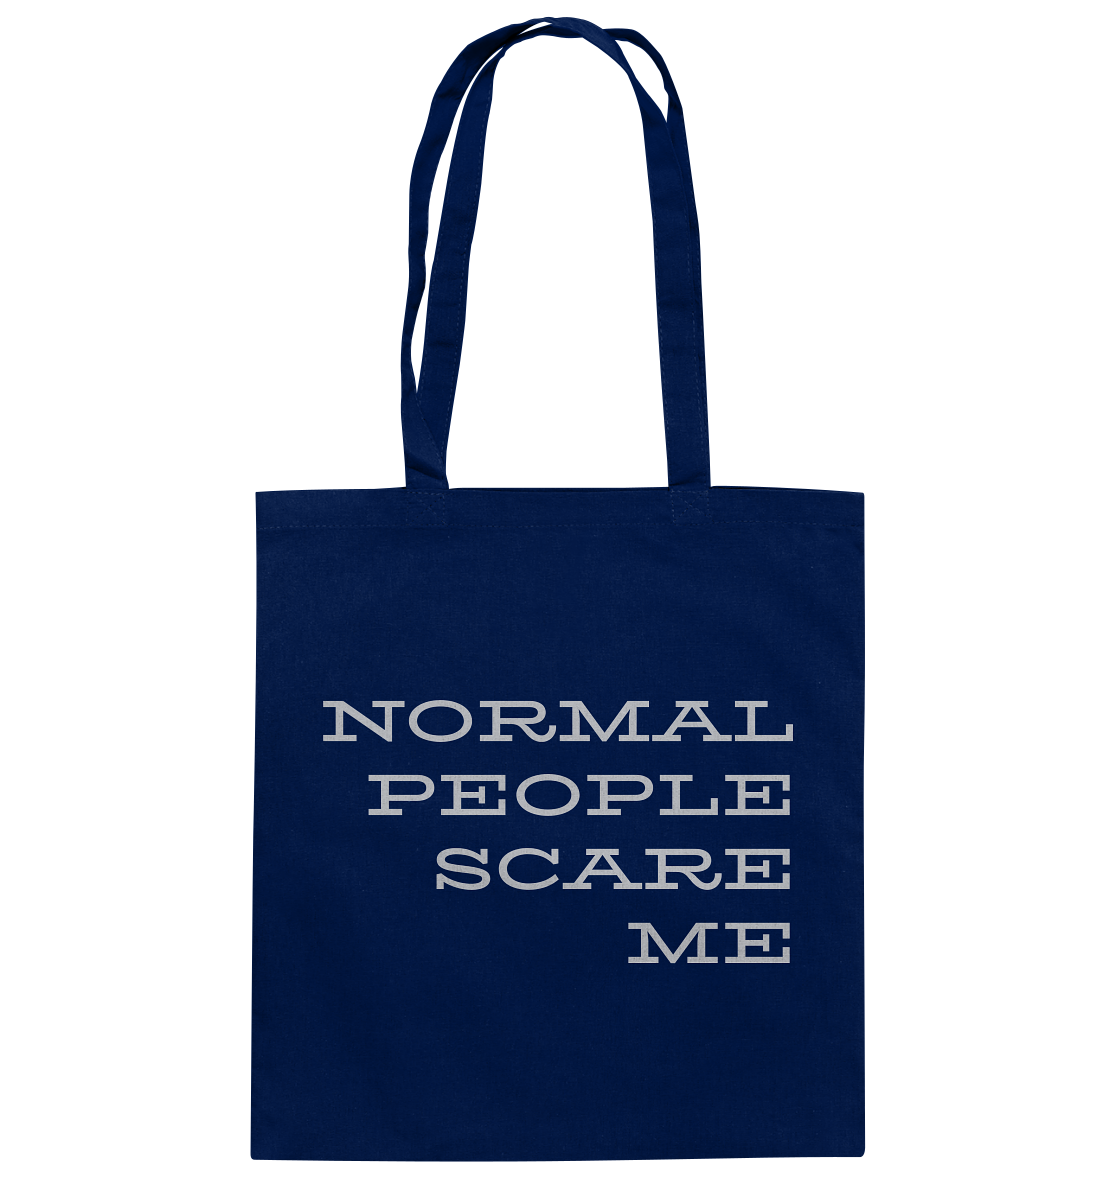 Stoffbeutel mit langen Henkeln, Aufdruck "Normal people scare me", blau